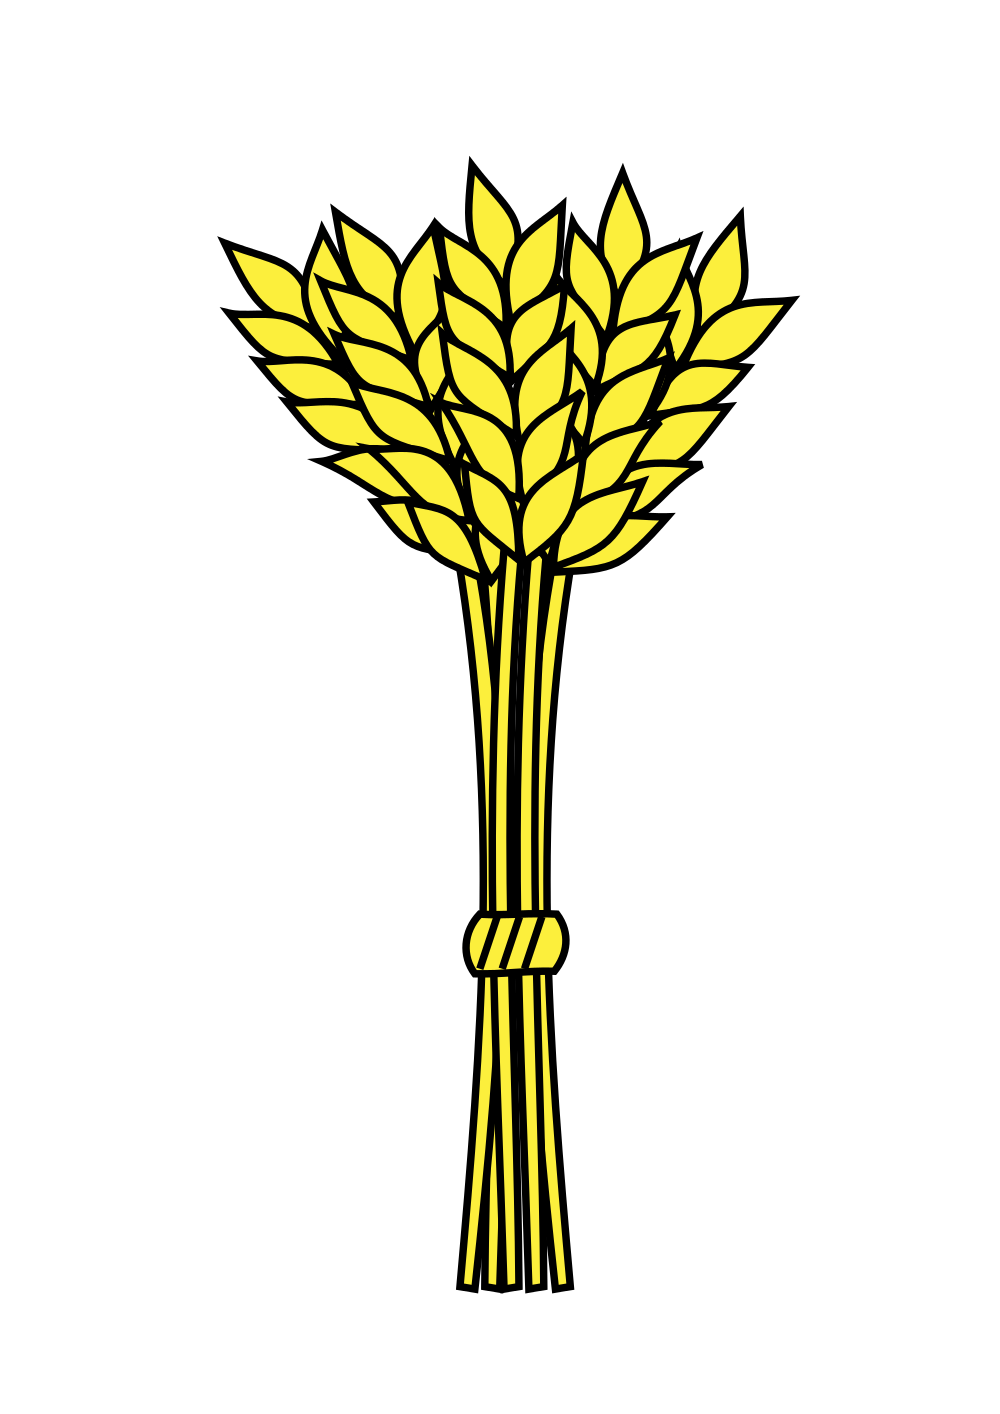 Grains bushel wheat